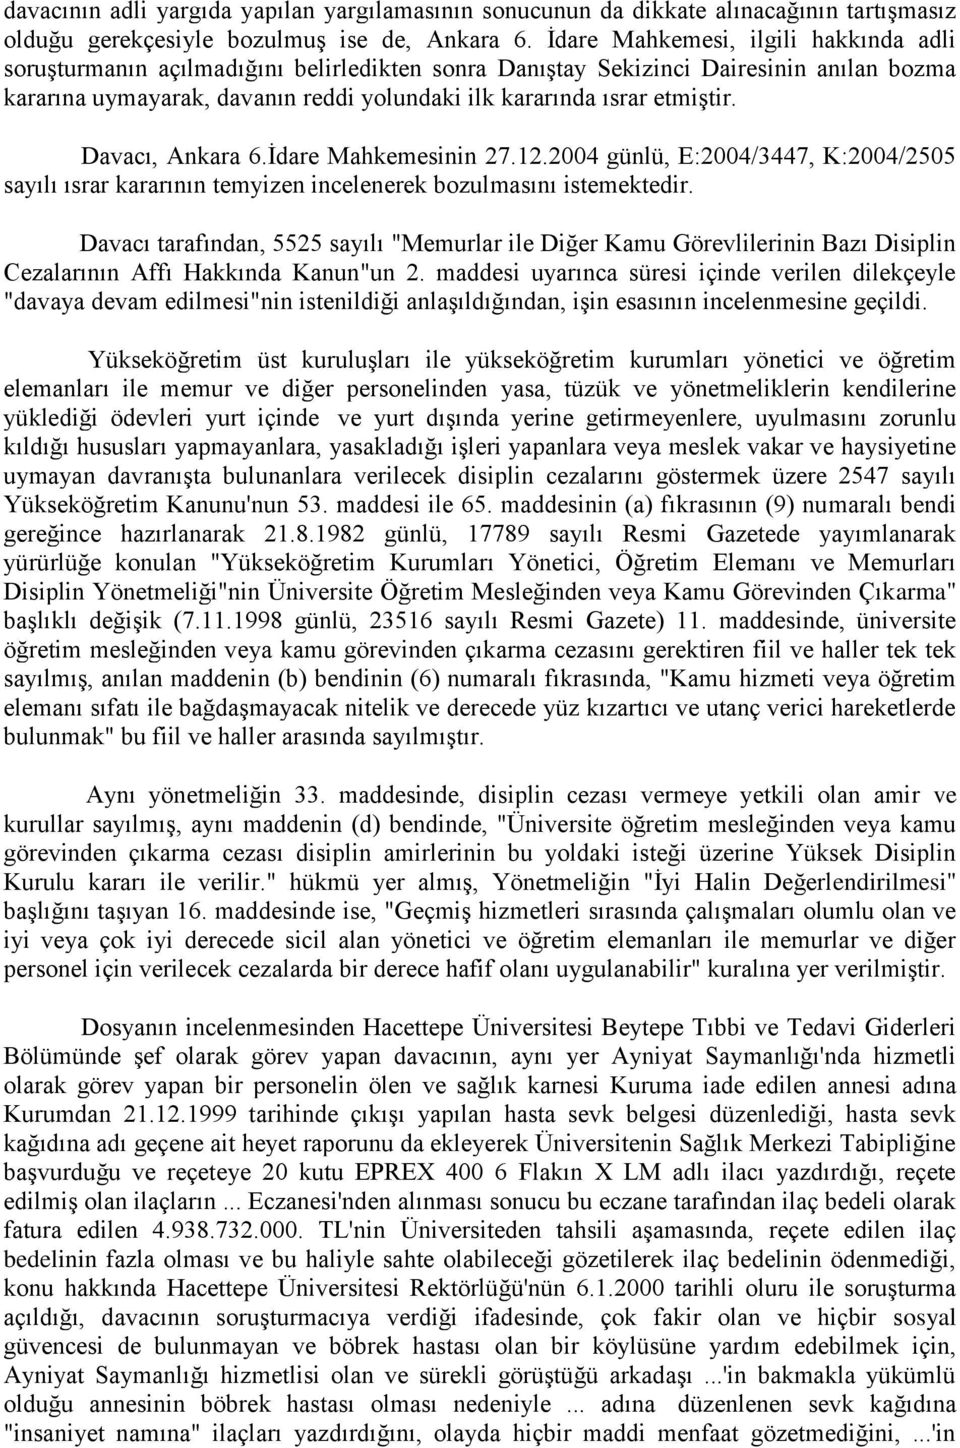 etmiştir. Davacı, Ankara 6.İdare Mahkemesinin 27.12.2004 günlü, E:2004/3447, K:2004/2505 sayılı ısrar kararının temyizen incelenerek bozulmasını istemektedir.